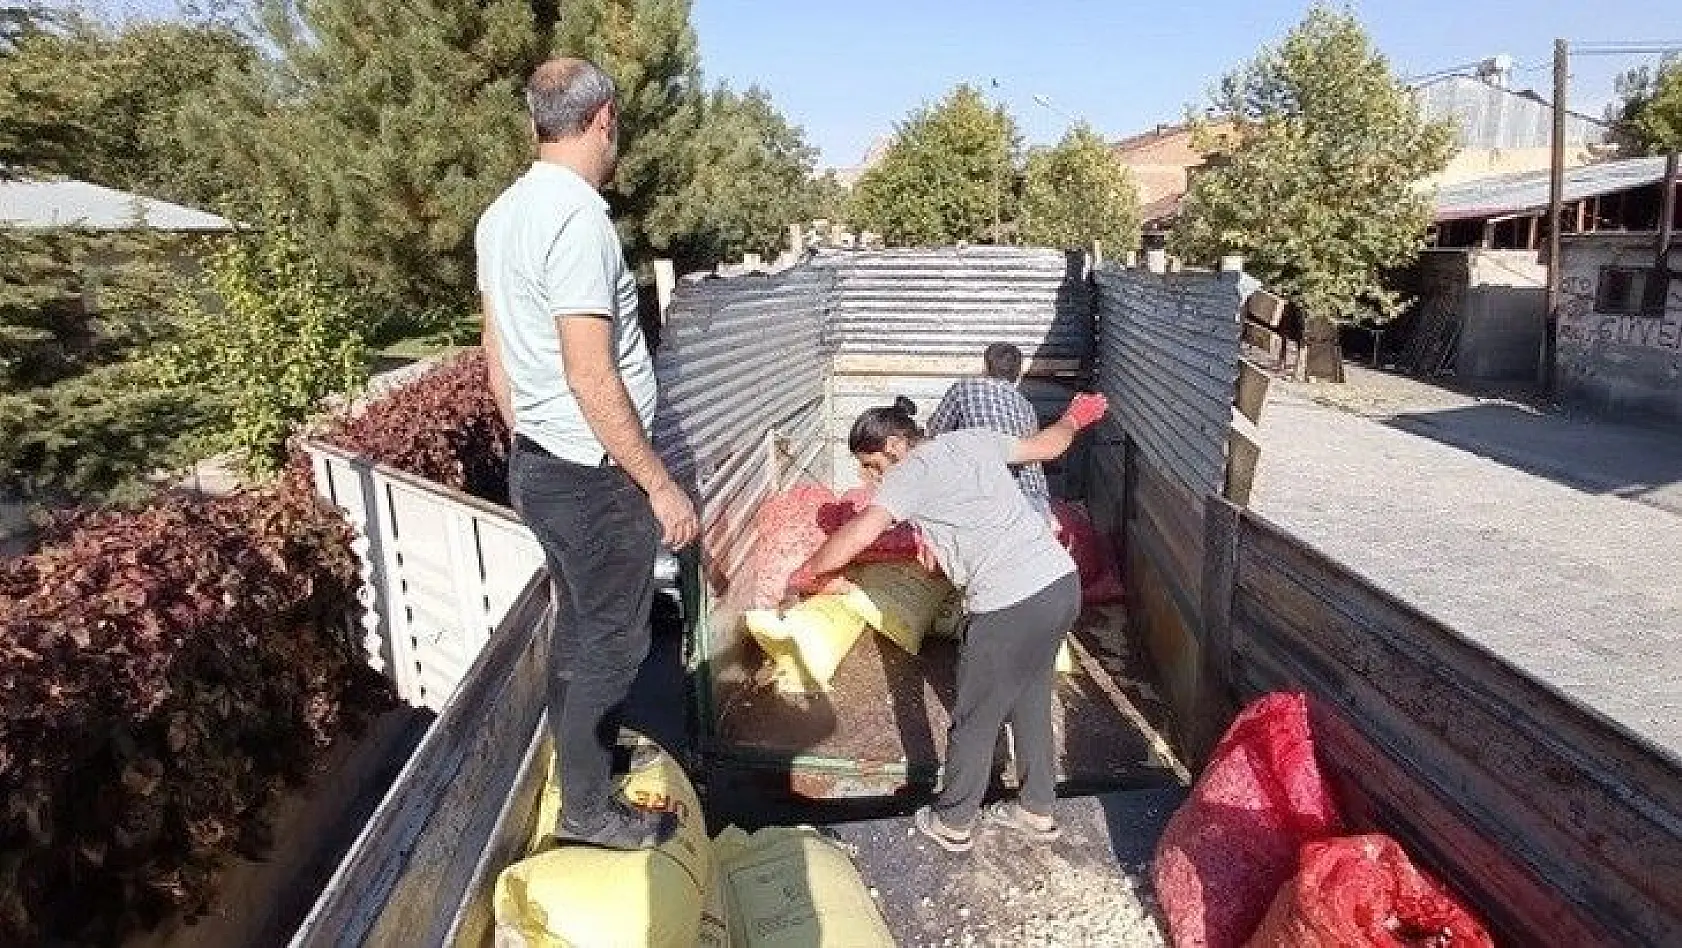 Elazığ'da çiftçilere yüzde 75 hibeli sarımsak tohumu dağıtıldı